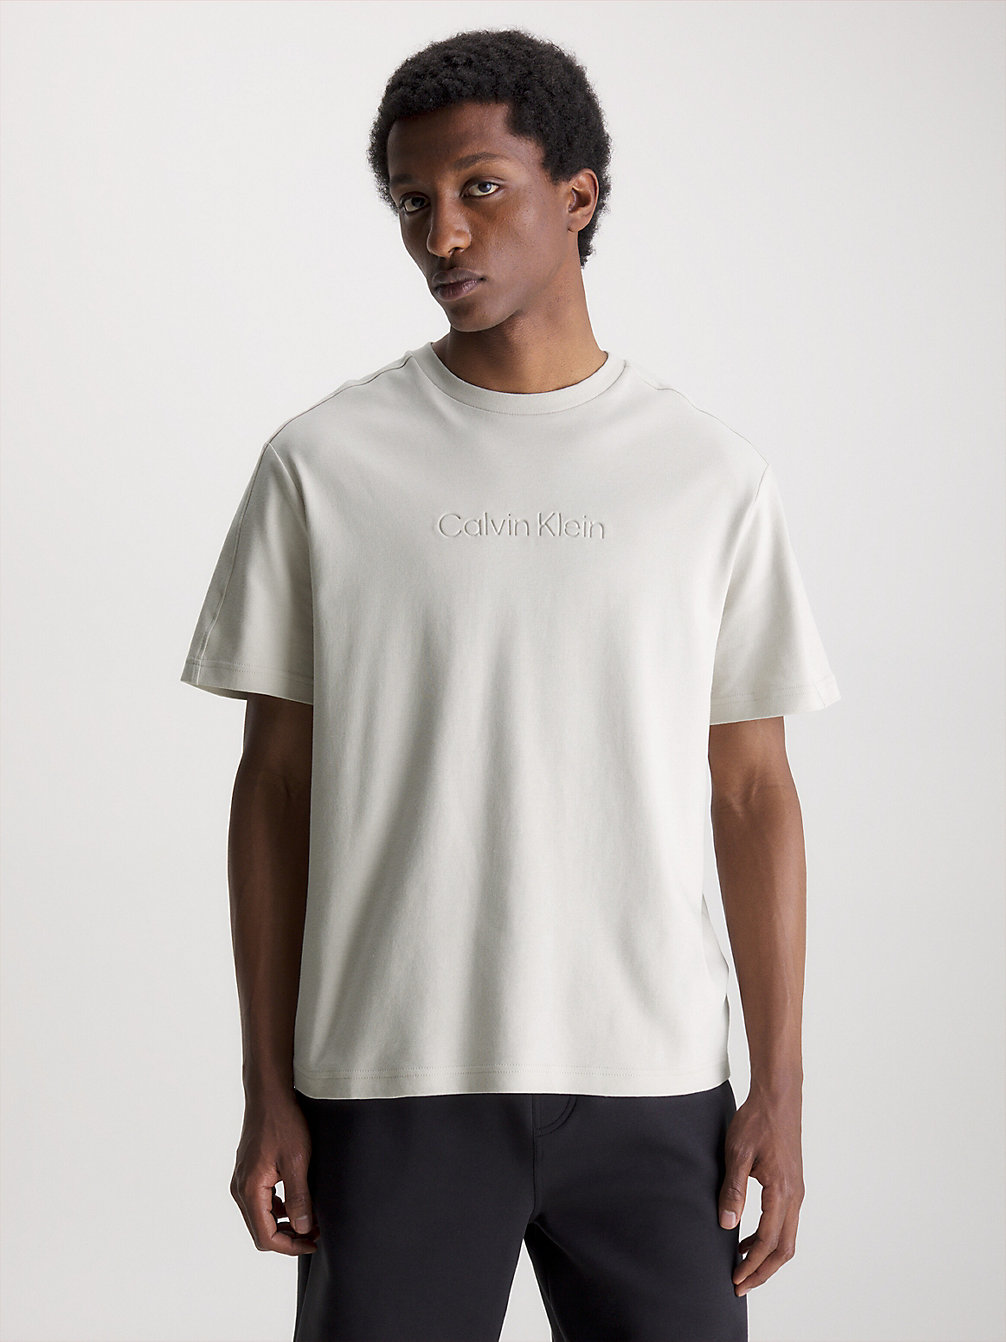 STONY BEIGE Logo-T-Shirt Aus Bio-Baumwolle undefined Herren Calvin Klein